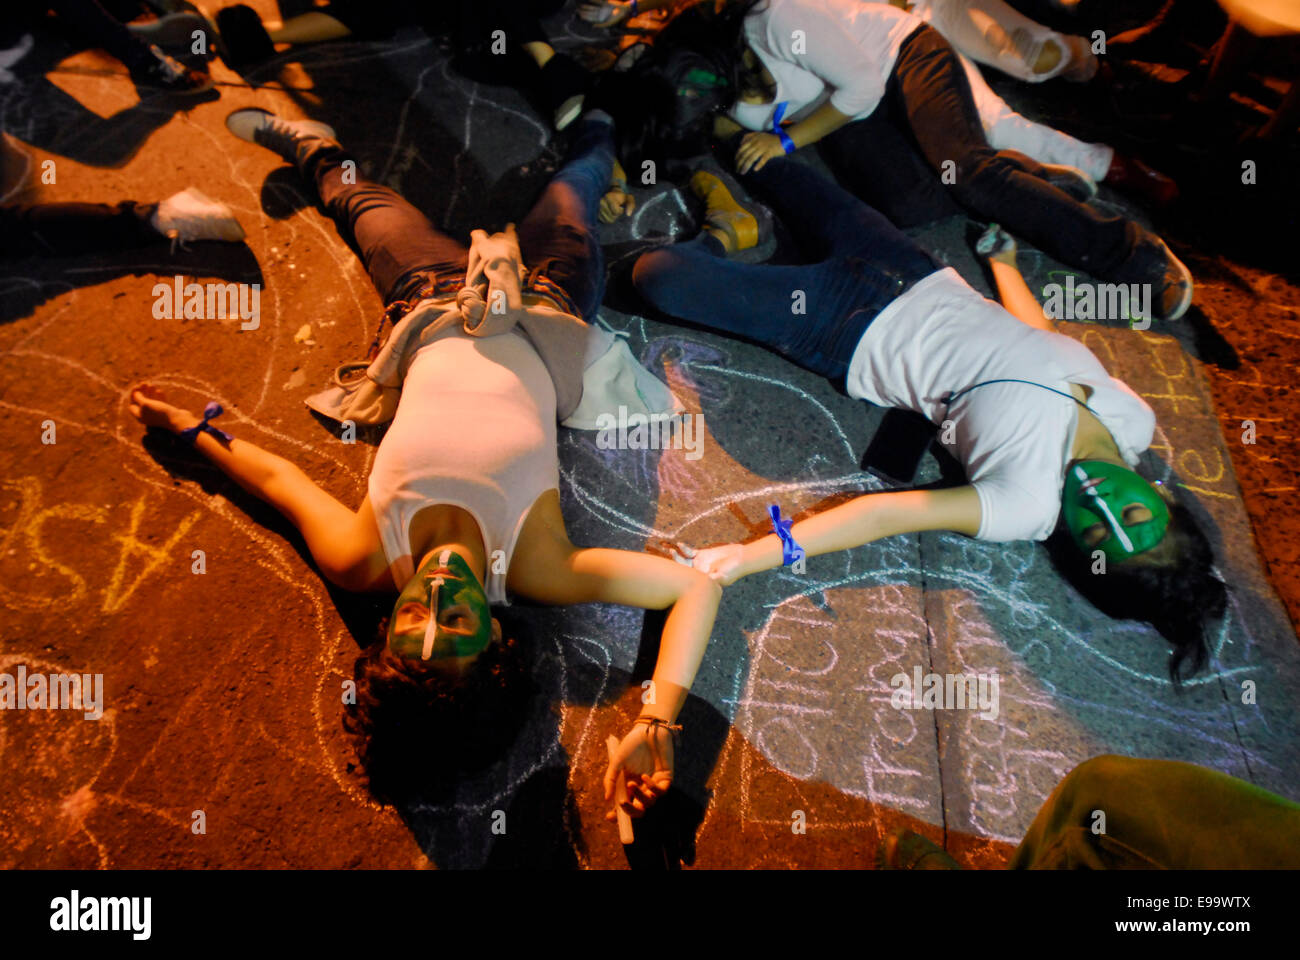 Guerrero, Messico. 22 ottobre, 2014. Veracruz gli studenti sono scesi in piazza per chiedere il ritorno del 43 studenti mancanti (normalistas) nella sparizione forzata dalla polizia municipale di Iguala, Guerrero. Credito: Raul Mendez Velazquez/Pacific Press/Alamy Live News Foto Stock